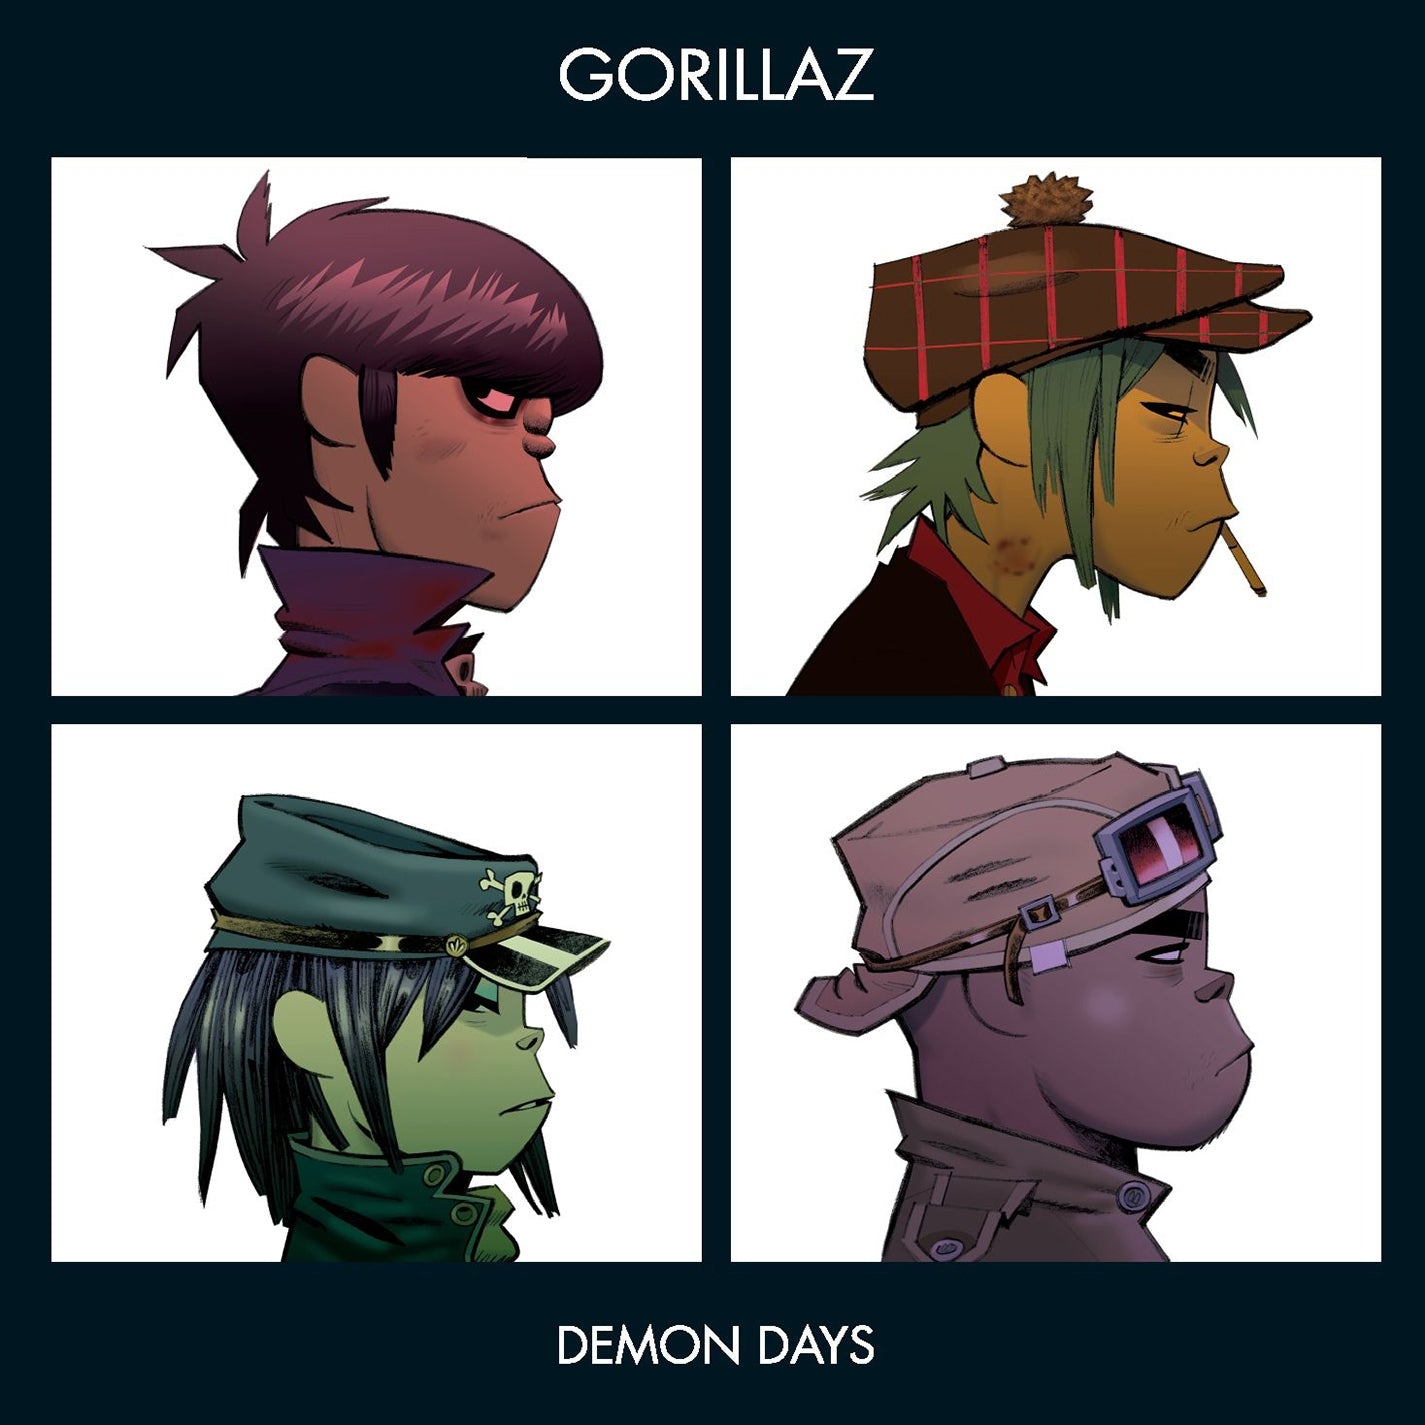 Gorillaz "Demon Days" 2XLP